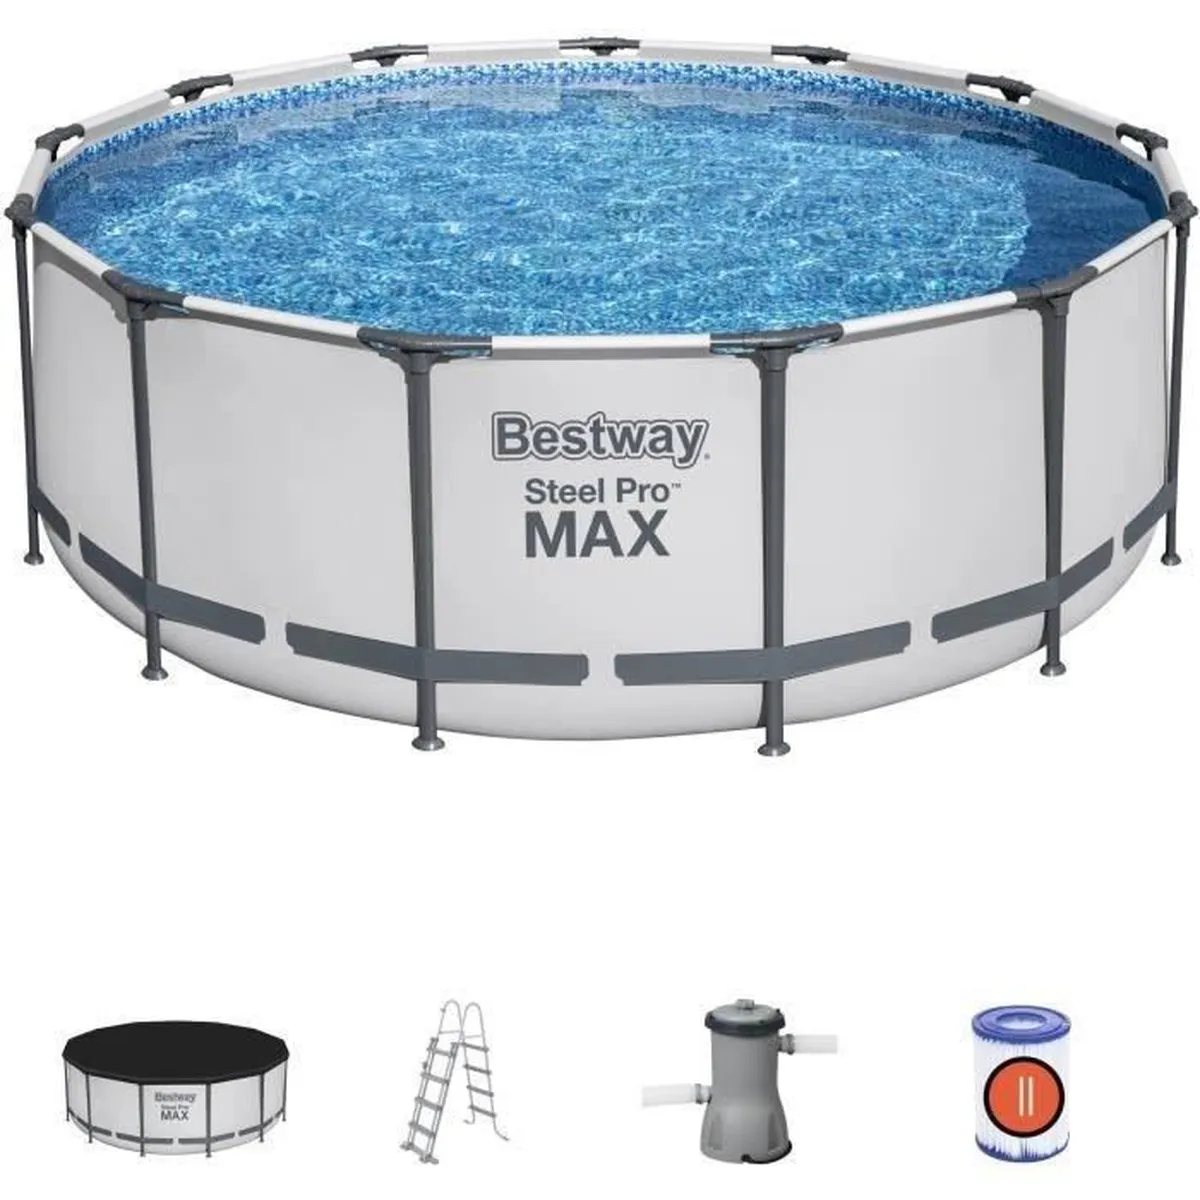 Soldes d'été : une superbe remise à saisir sur la piscine tubulaire Bestway Steel Pro Max !